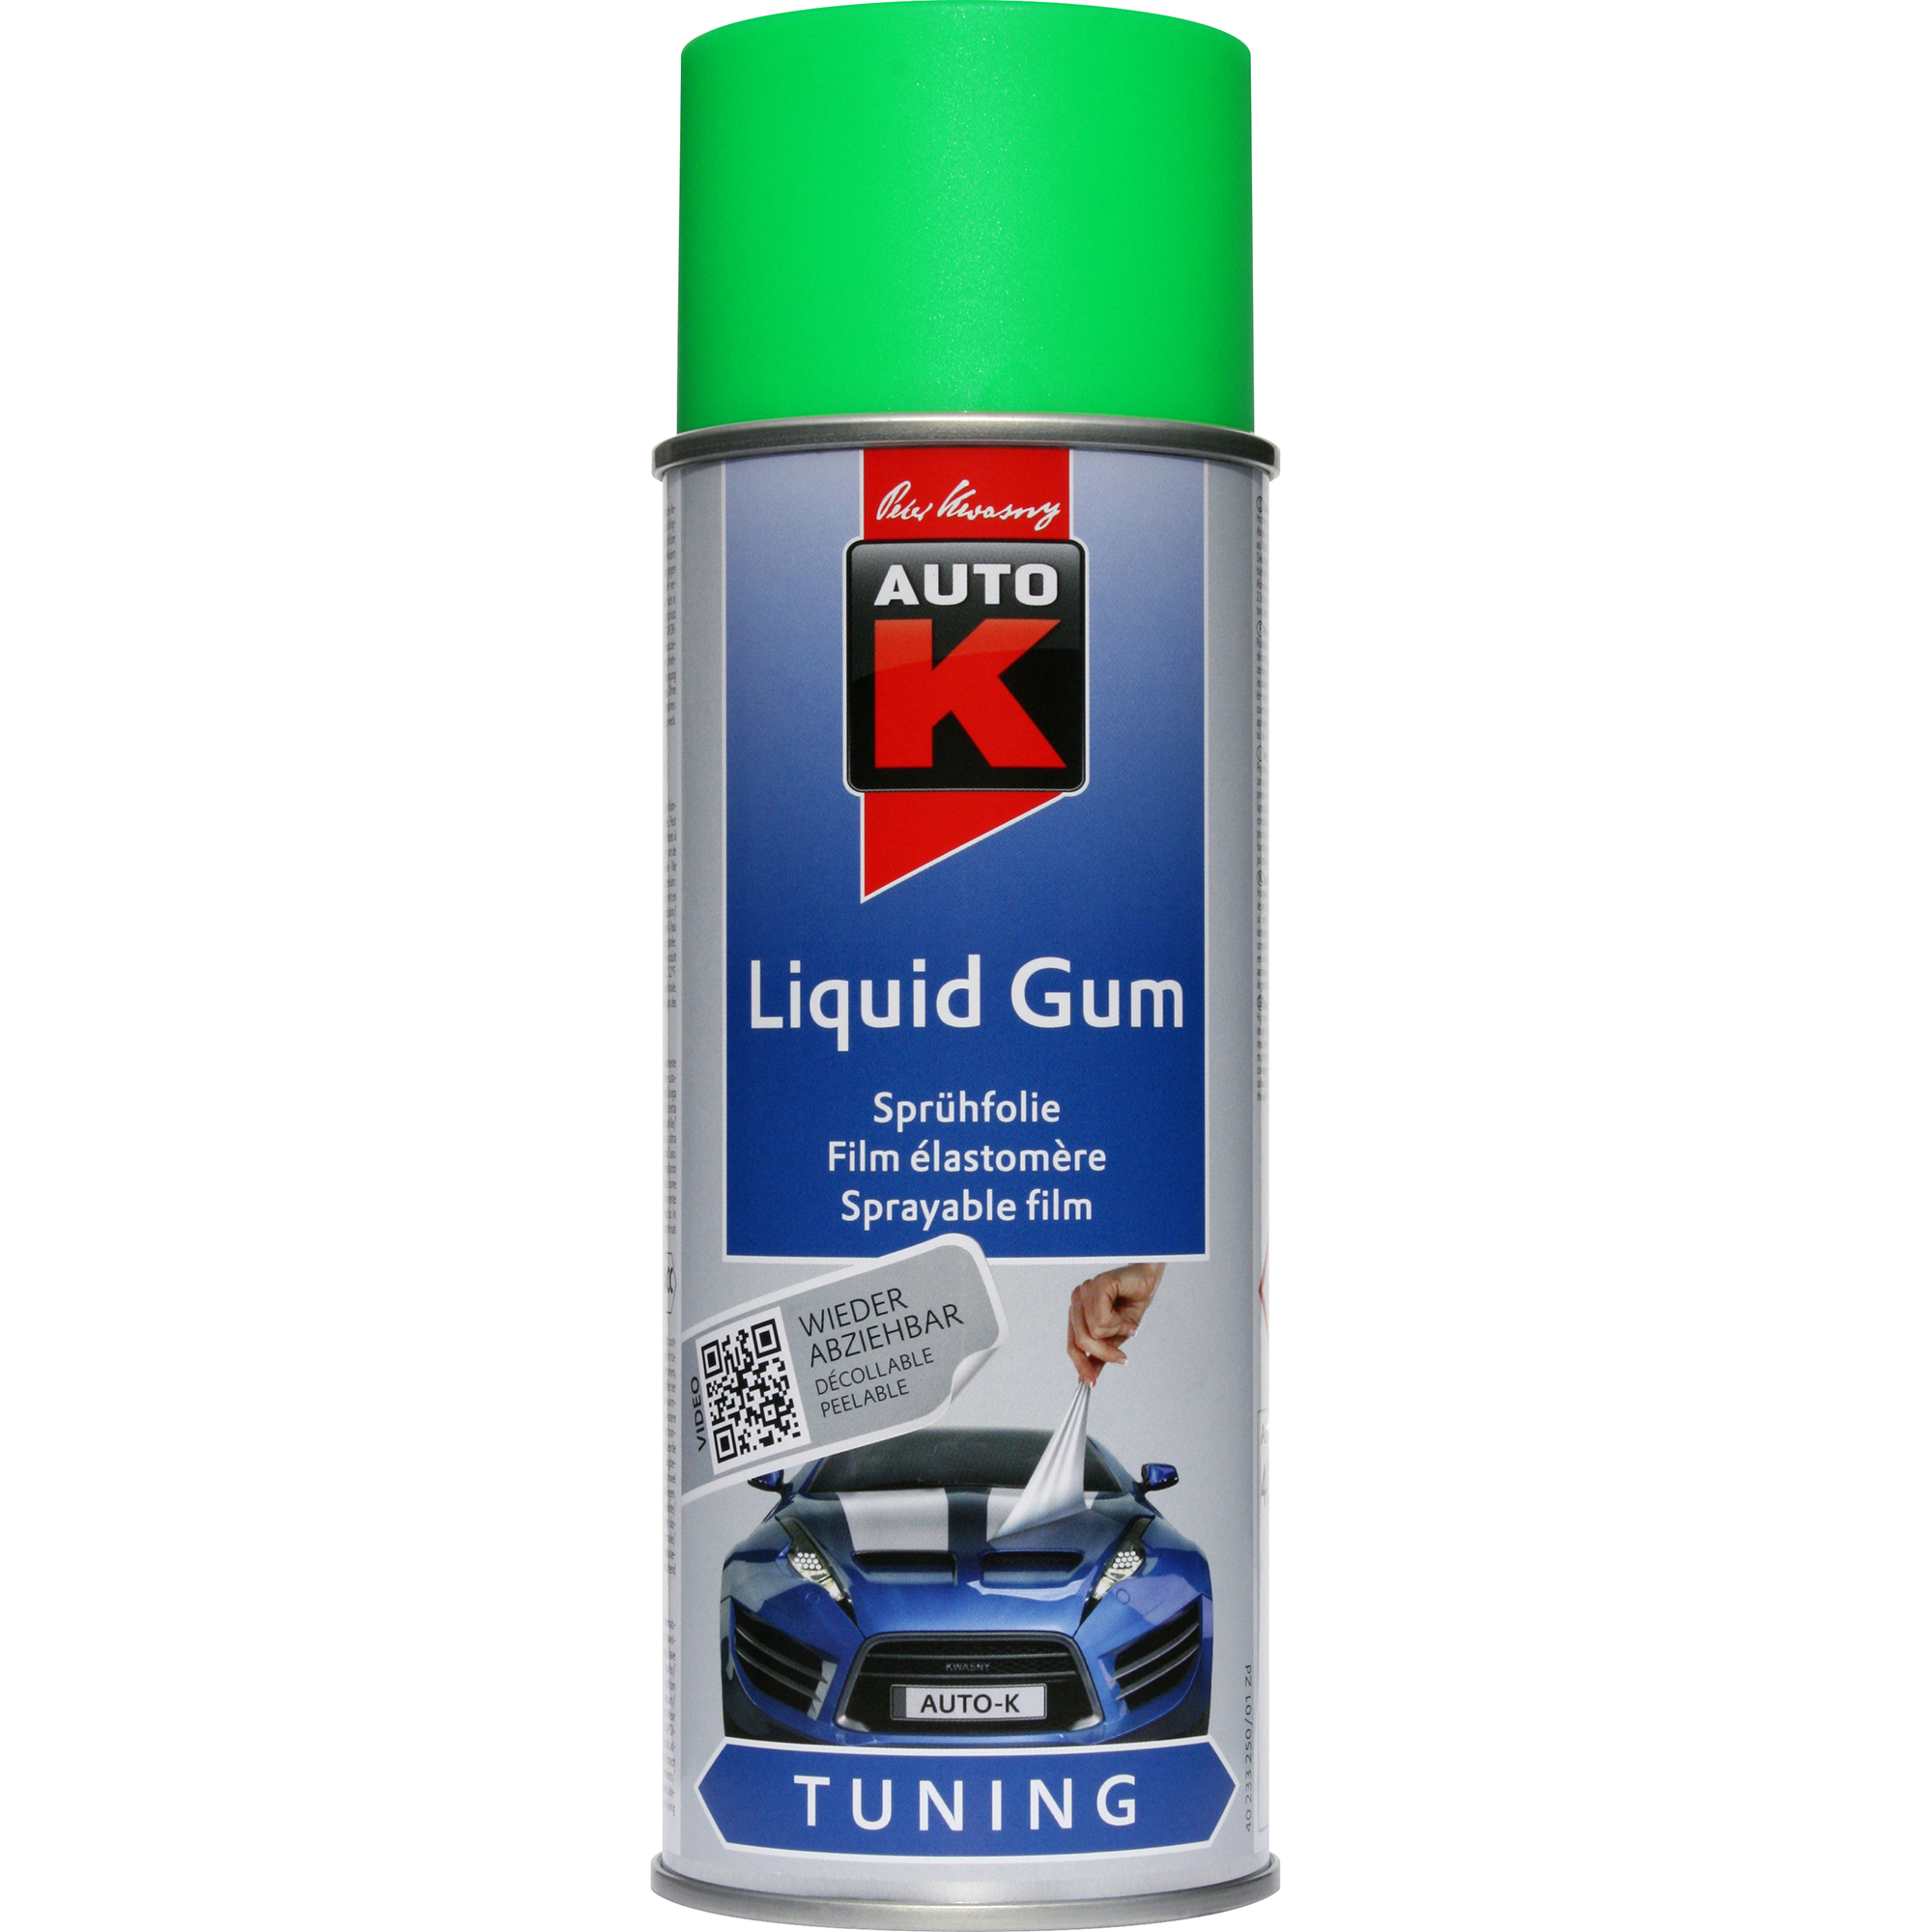 Sprühfolie Liquid Gum 'Auto-K' neongrün 400 ml + product picture